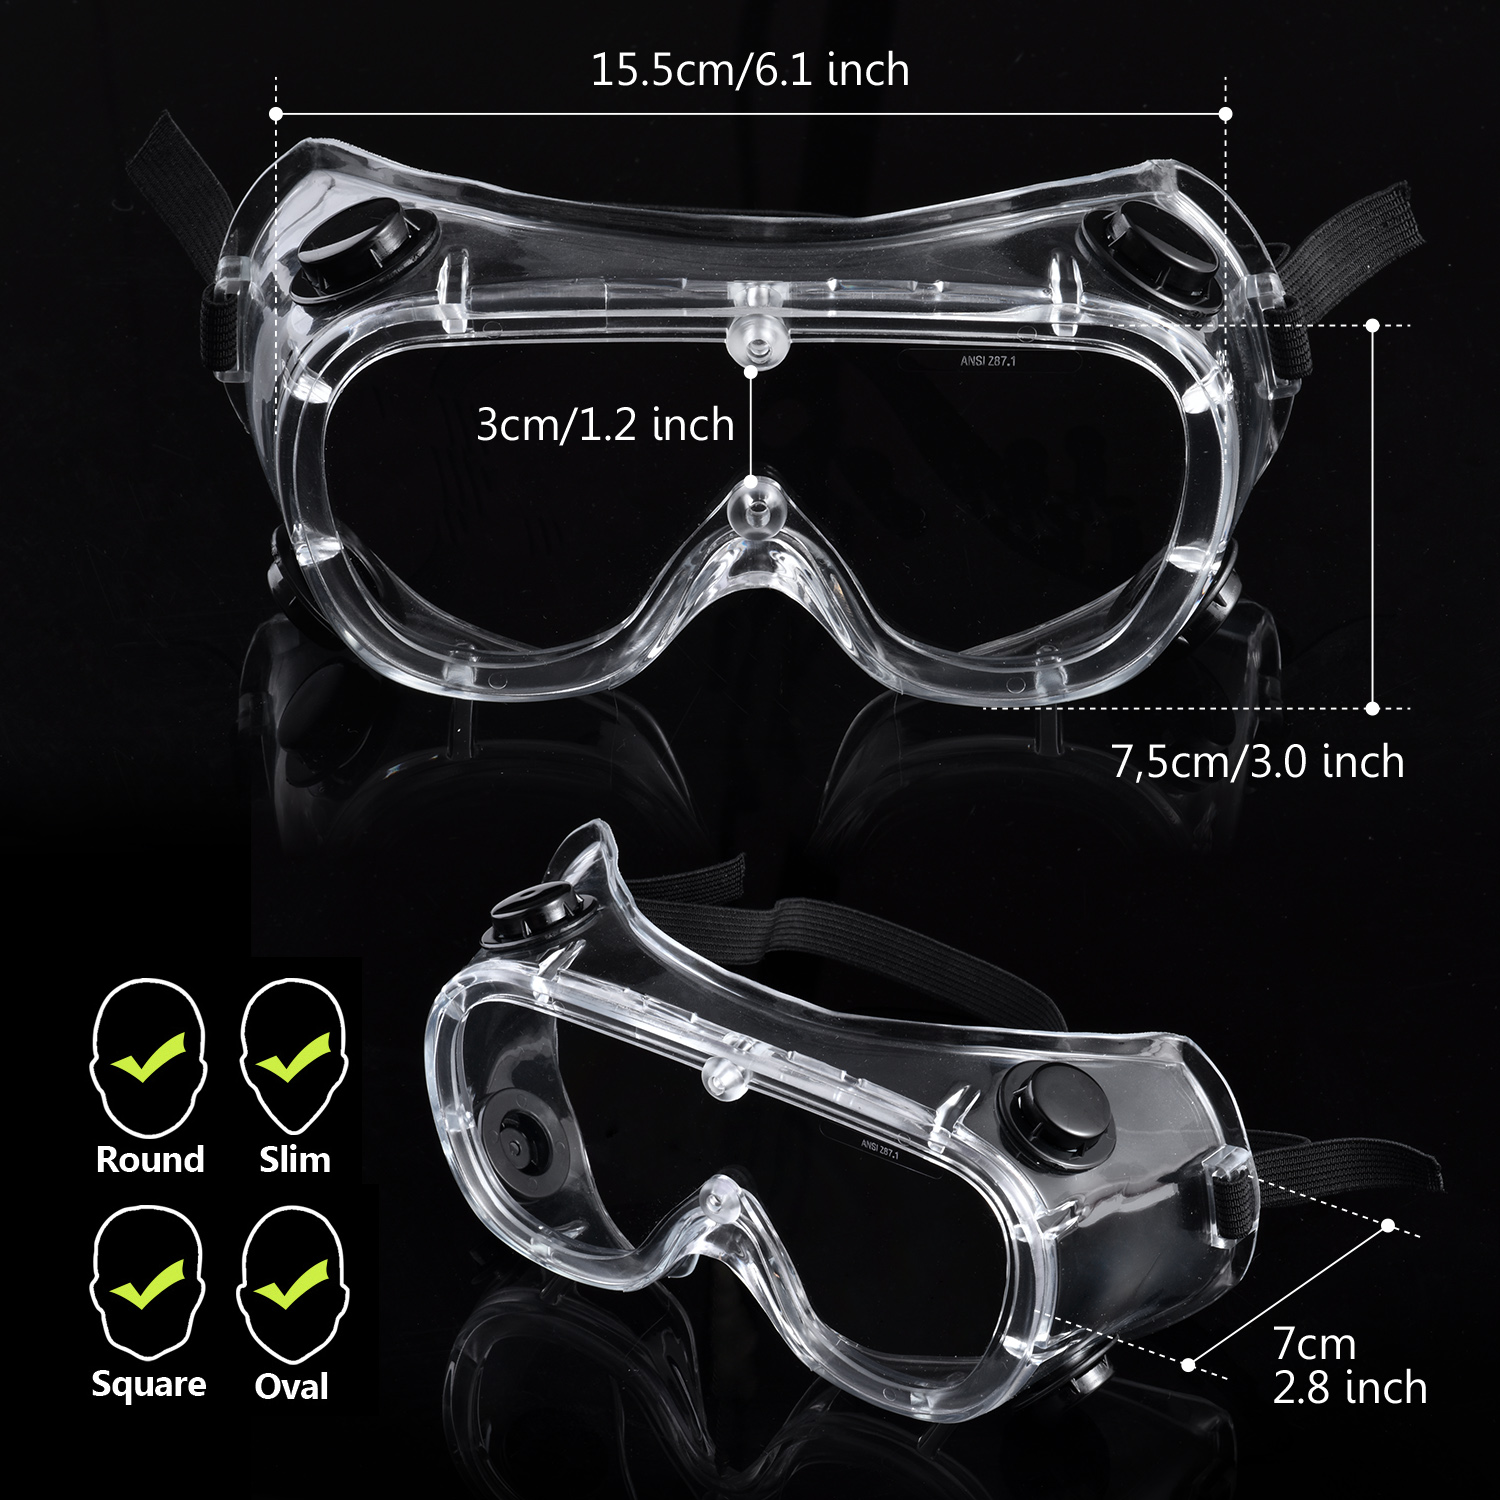 Gafas de seguridad transparentes listas para usar SG032